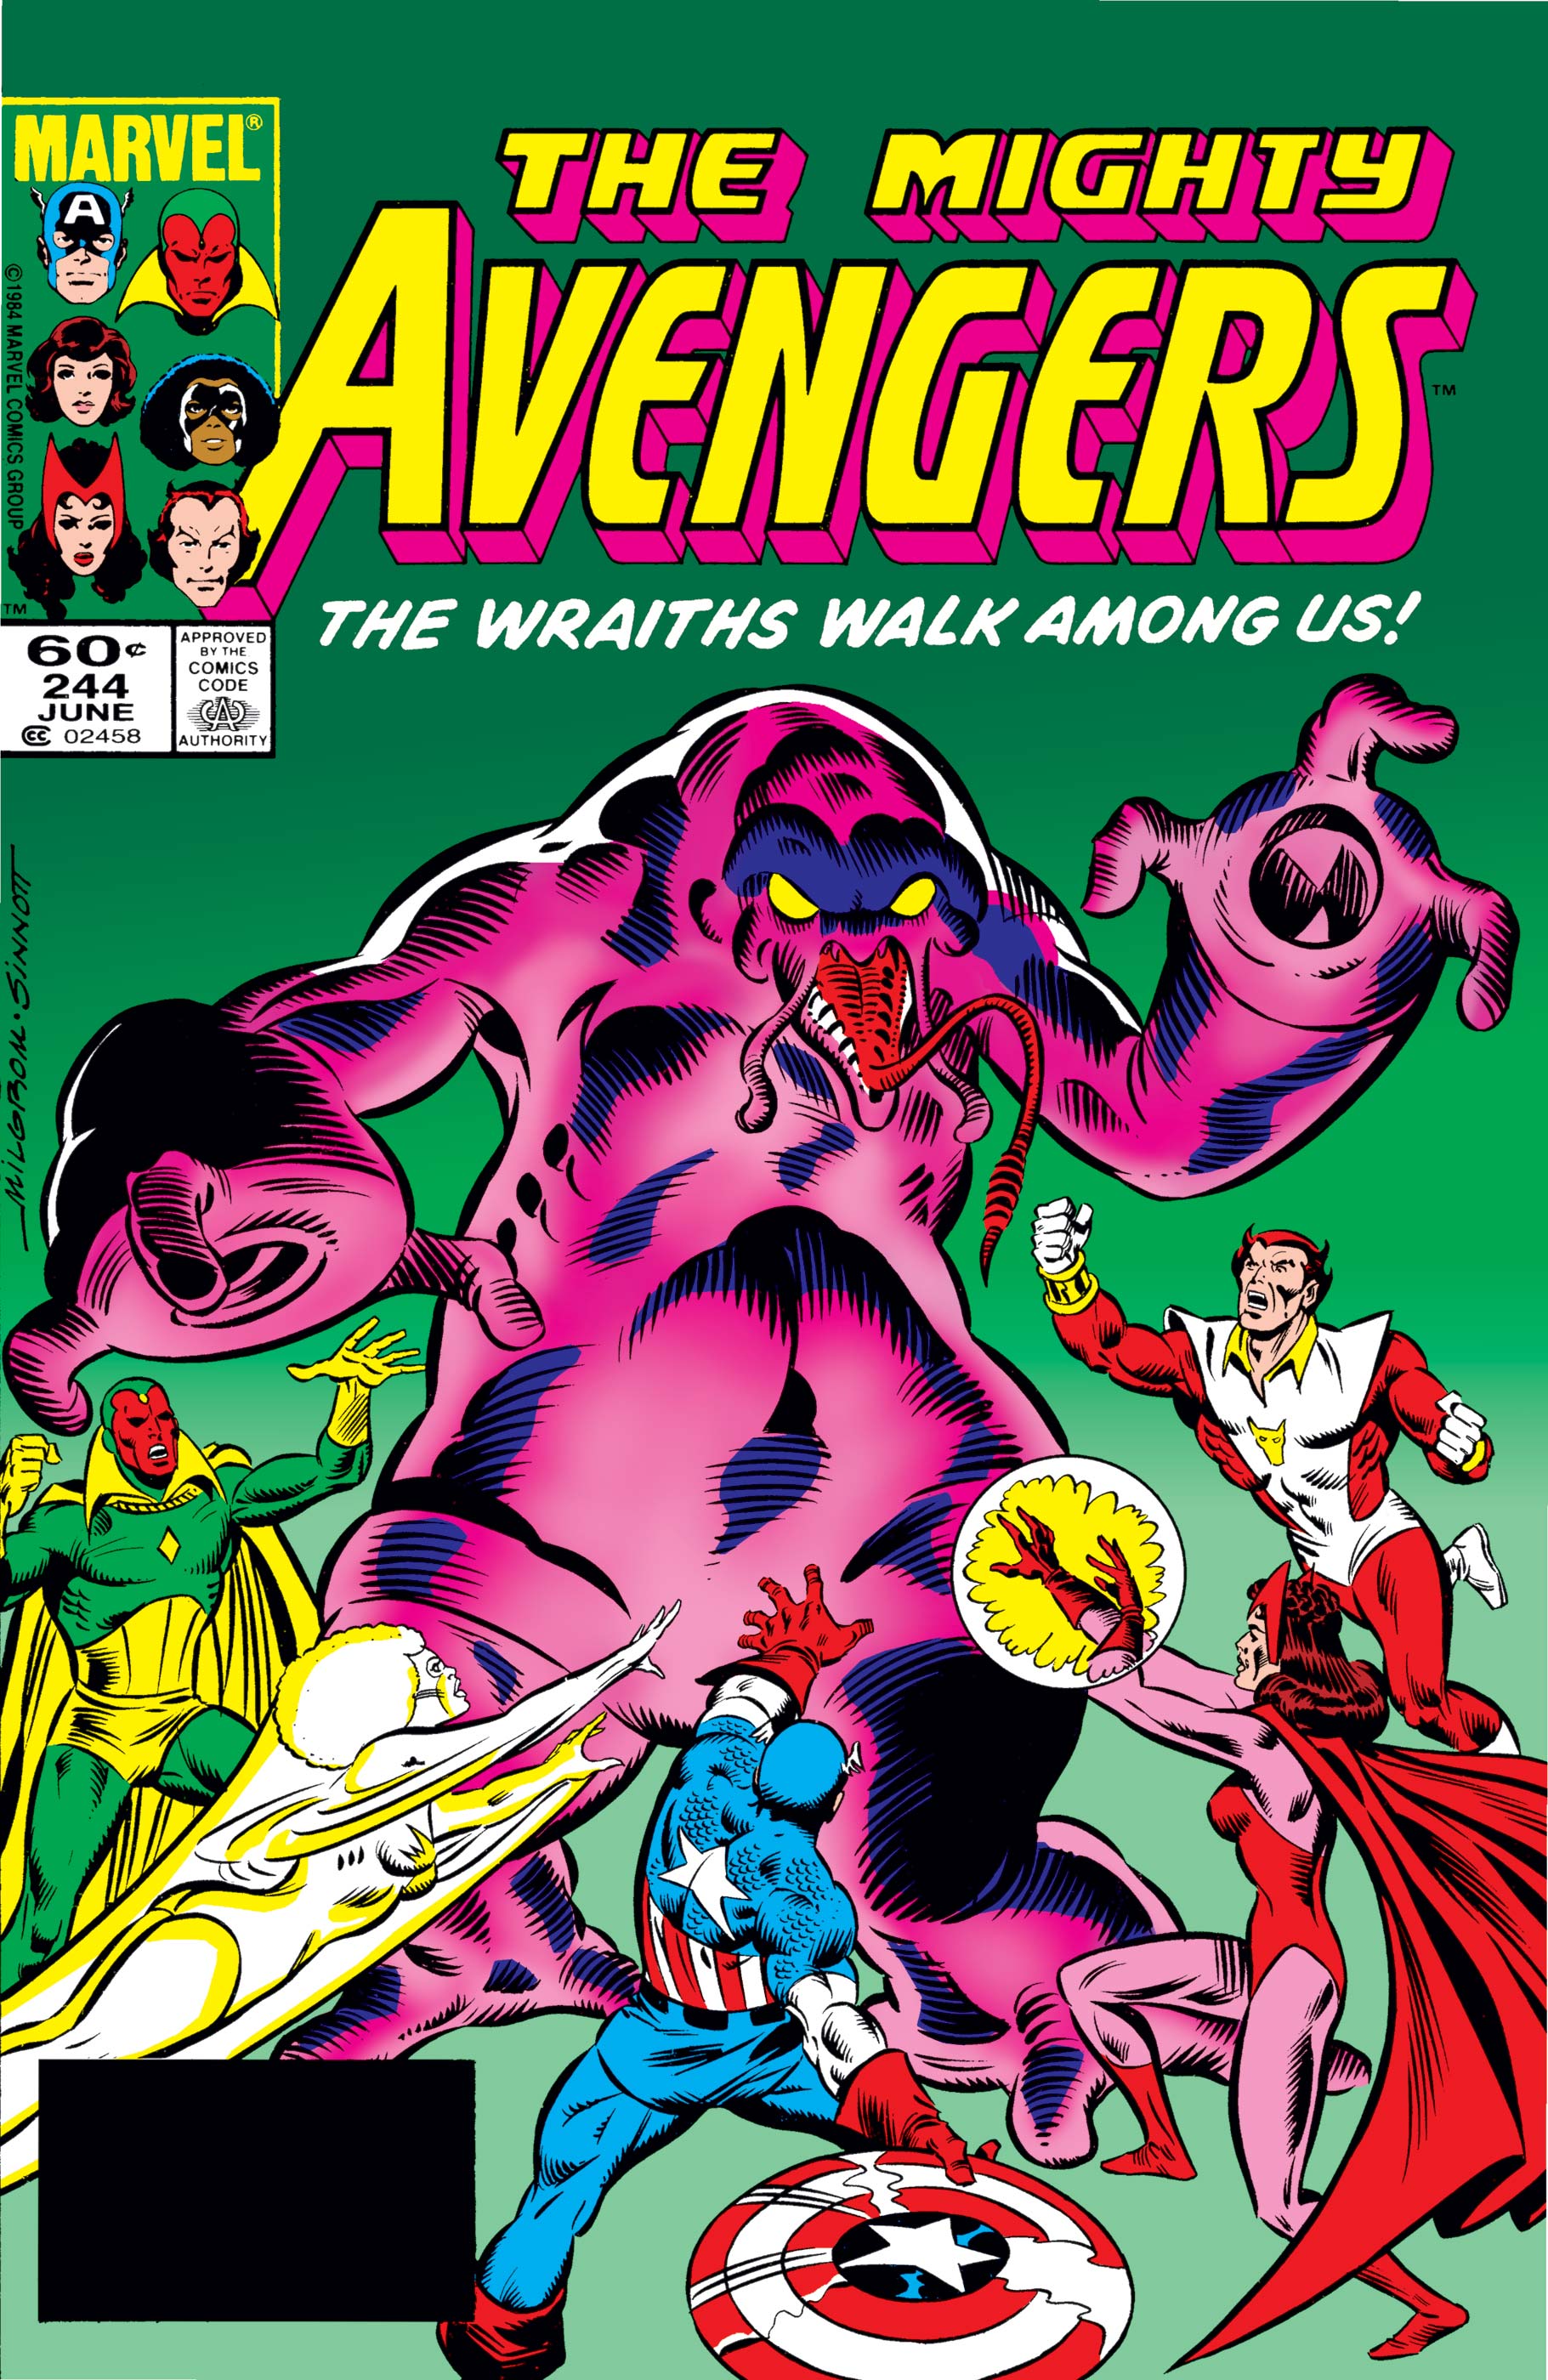 Avengers (1963) #244